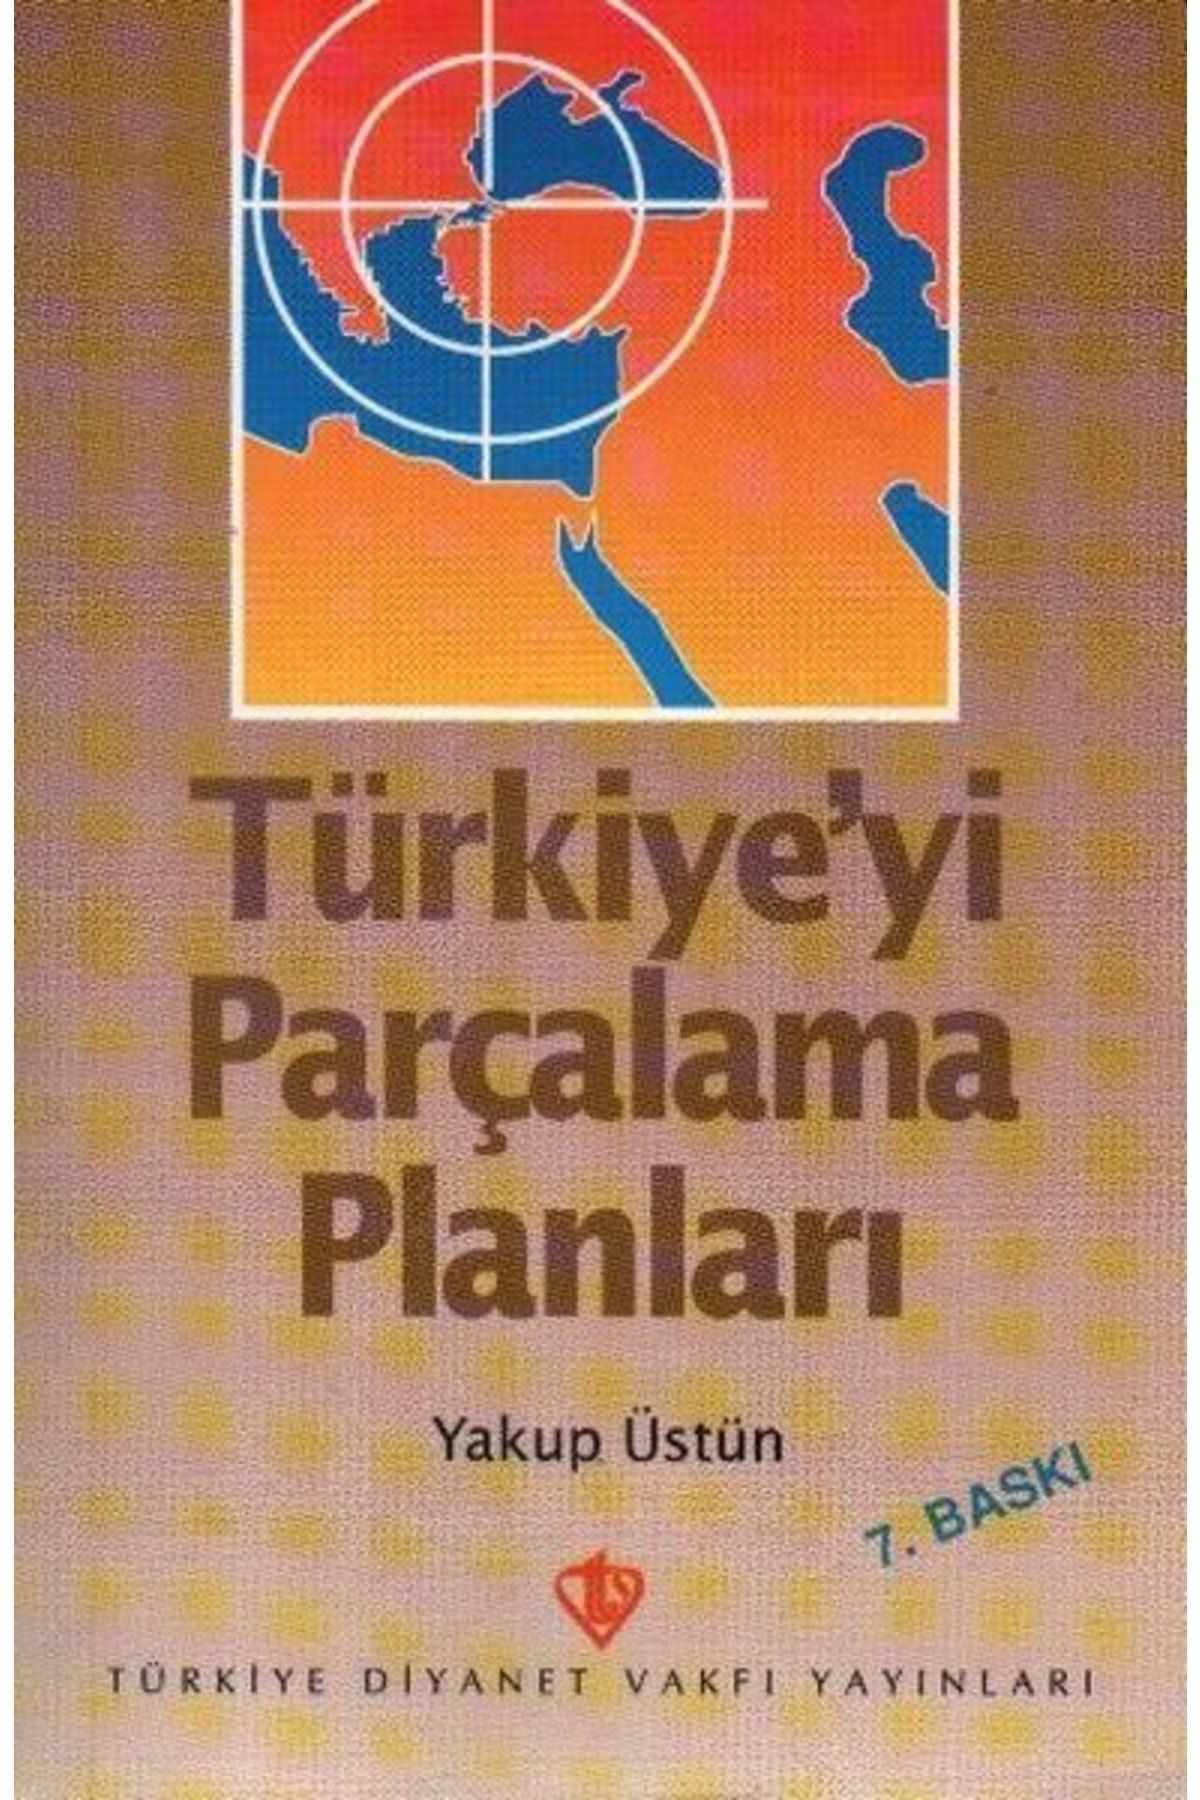 Türkiye Diyanet Vakfı Yayınları Türkiye'yi Parçalama Planları / Emir Şekip Arslan / / 9789753891035